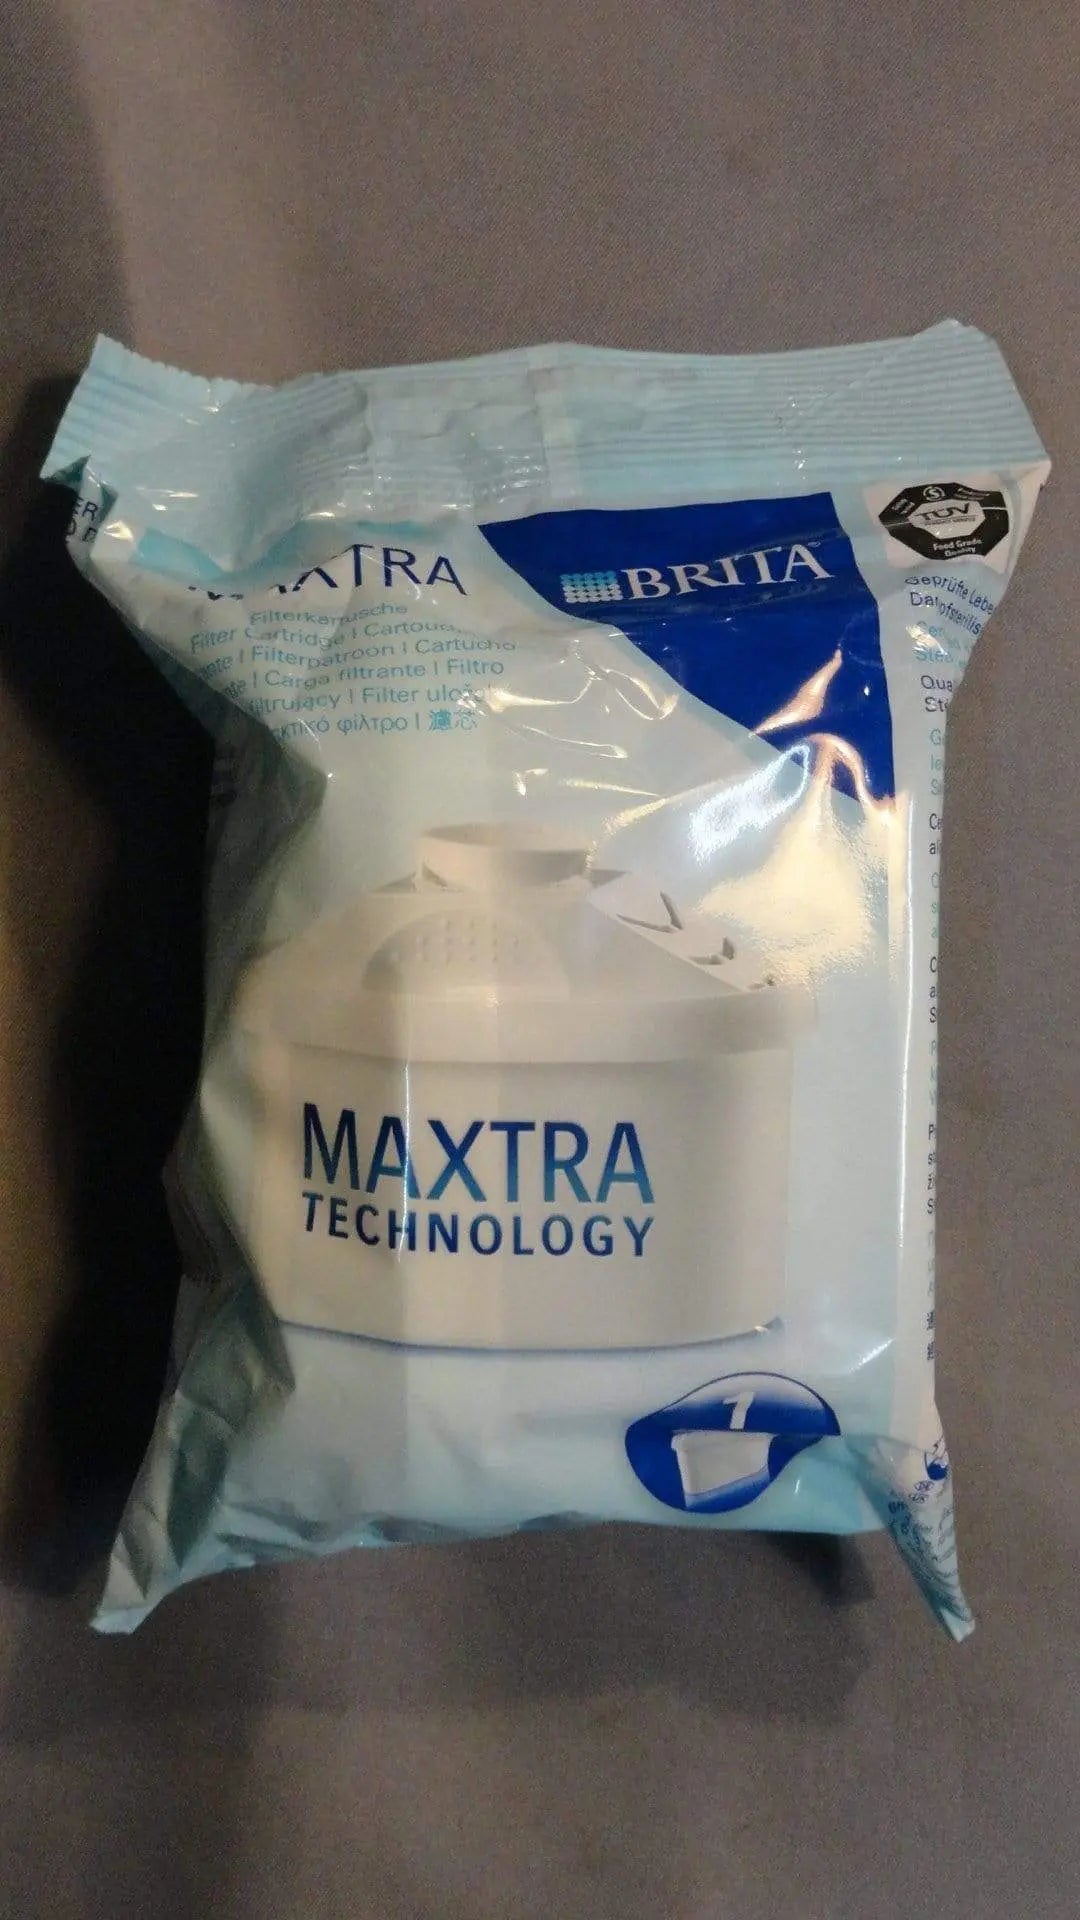 filtri caraffa brita maxtra 1 filtro BRITA